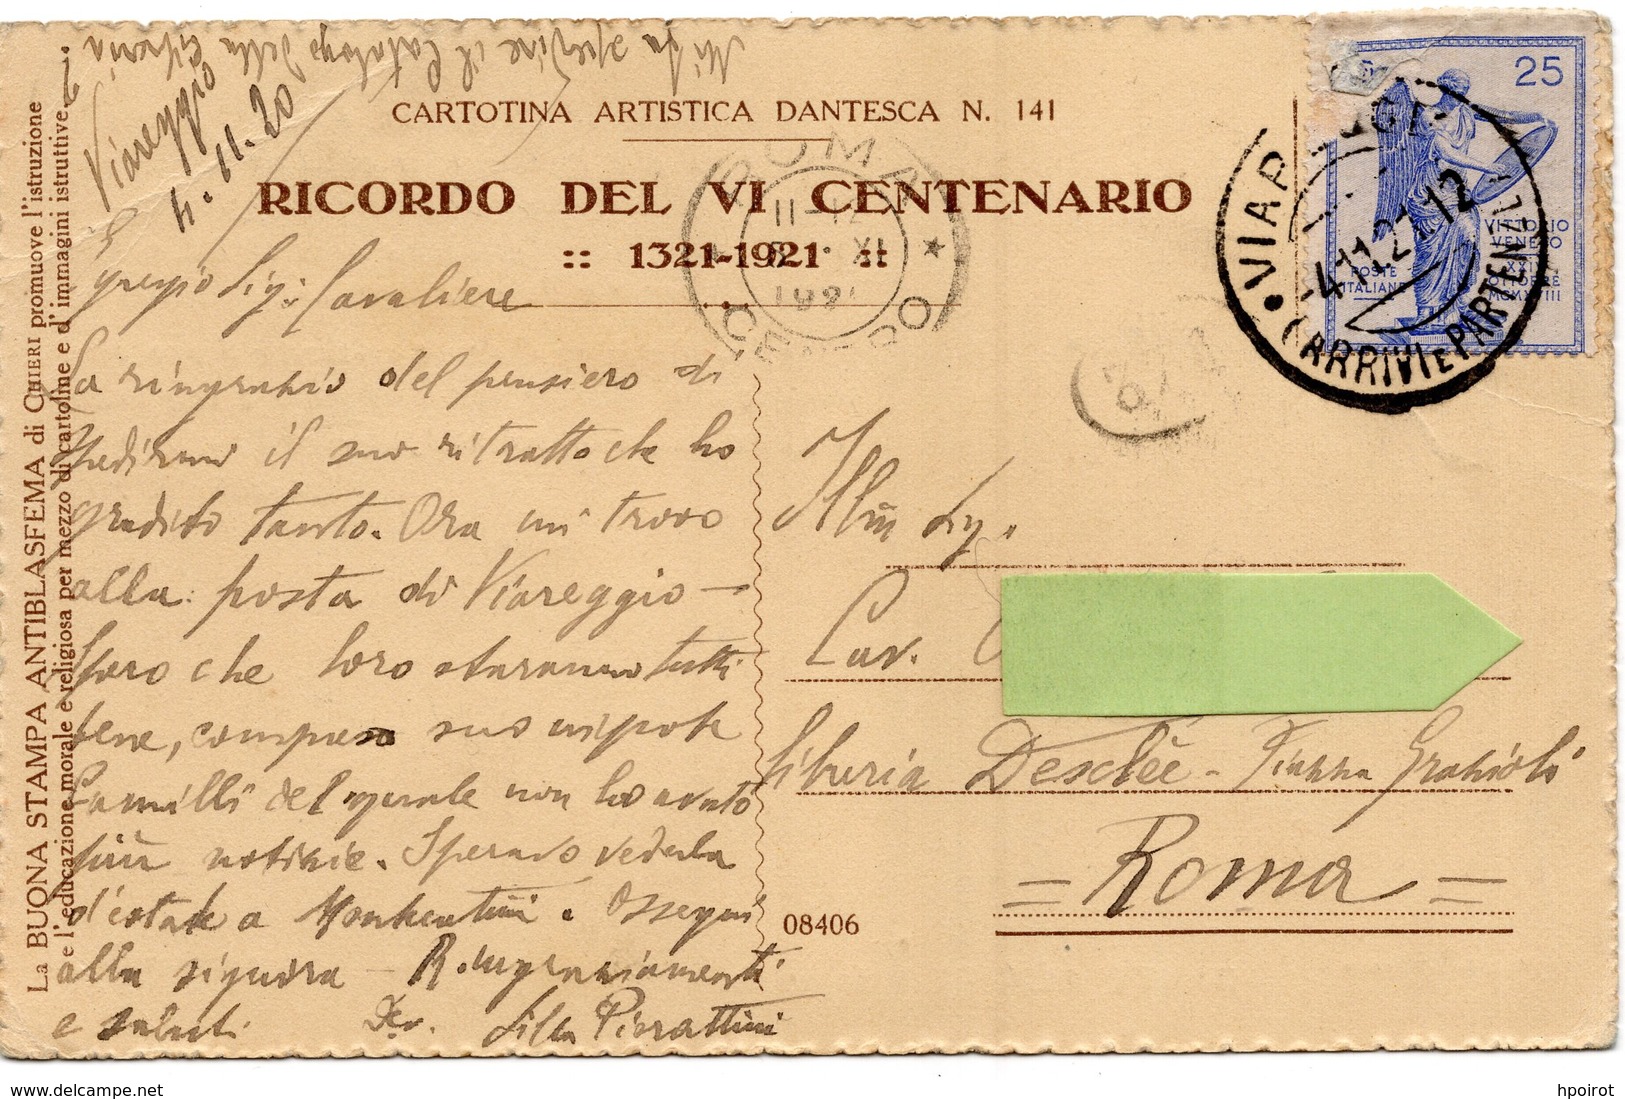 DANTE IN ESILIO - RICORDO DEL VI CENTENARIO 1321-1921 - FORMATO PICCOLO - VIAGGIATA 1921 - (rif. V94) - Histoire